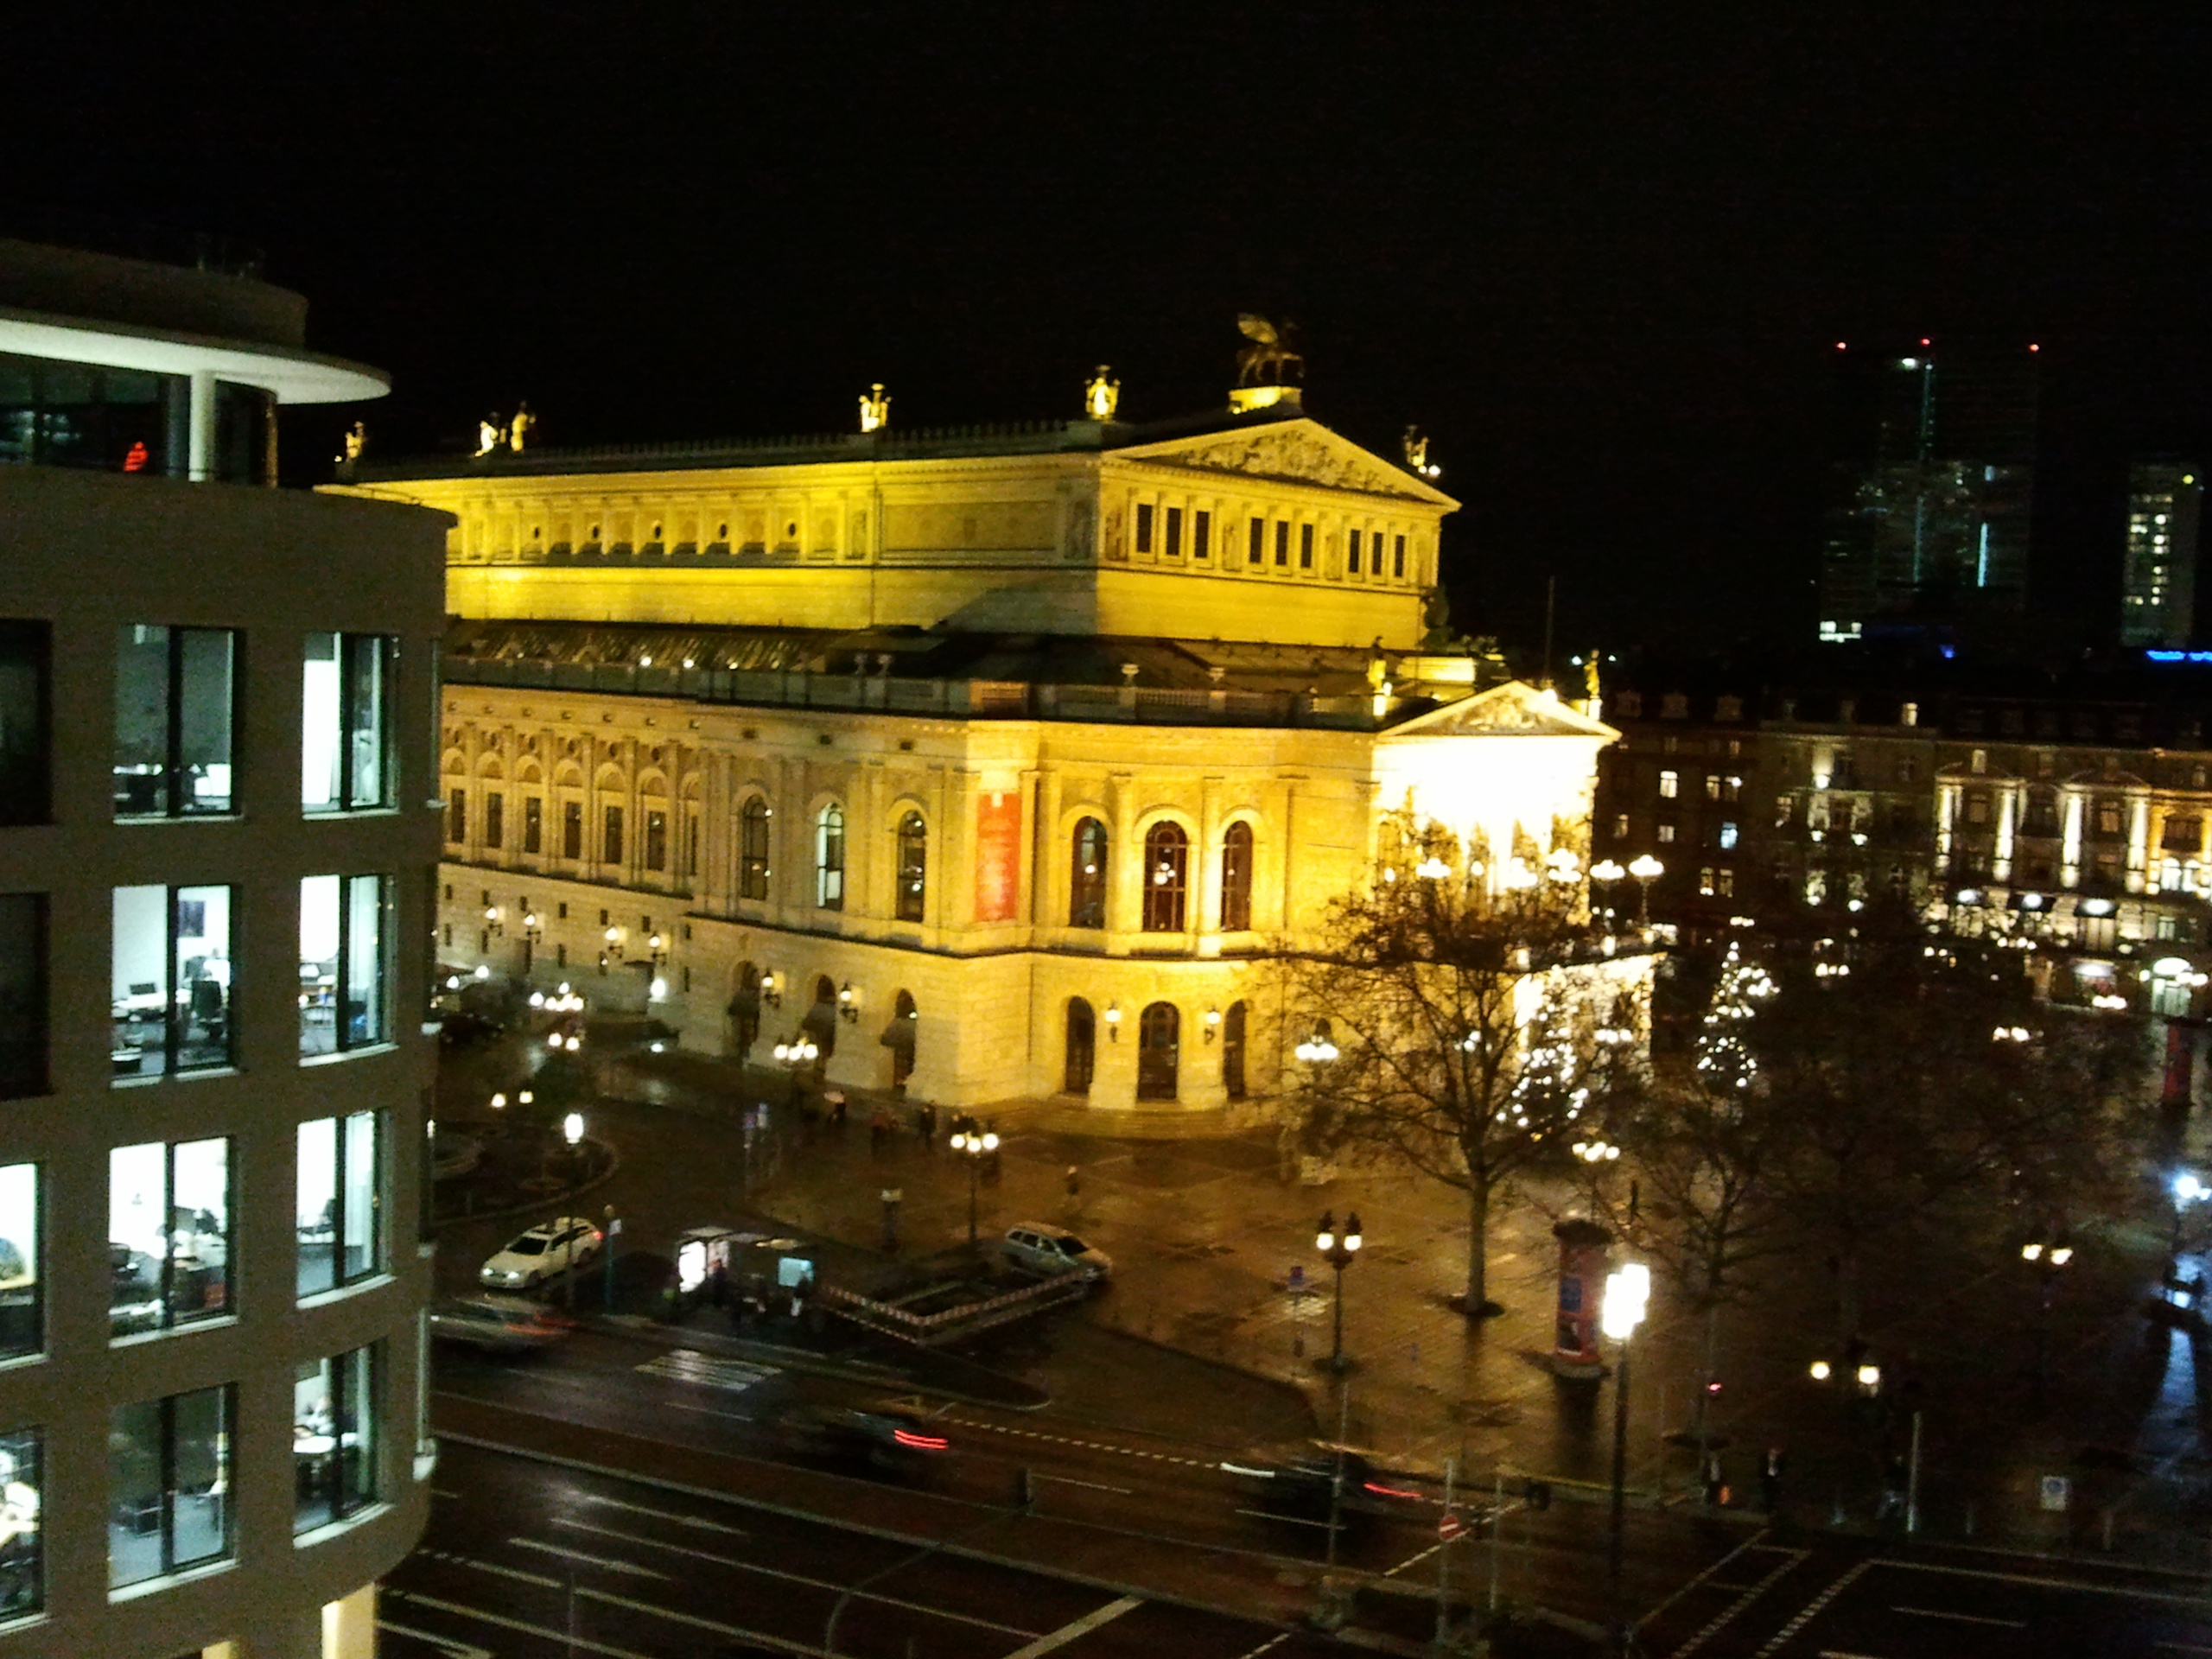 Alte Oper in Frankfurt am Main bei Nacht - kurz vor heilig Abend mit festlicher Beleuchtung.
